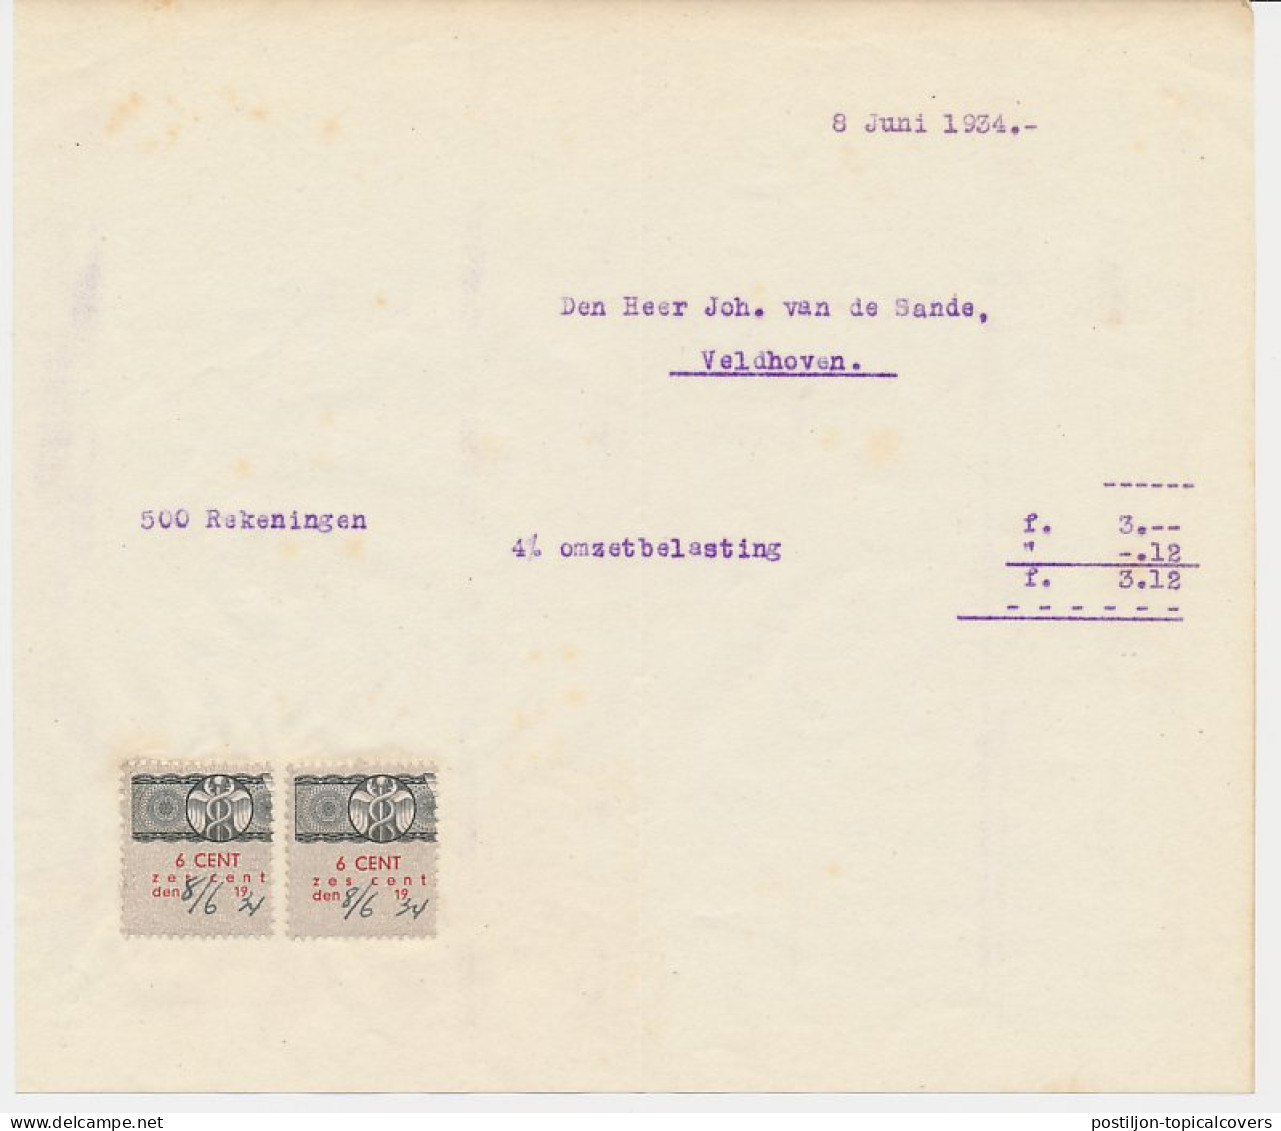 Omzetbelasting 6 CENT - Veldhoven 1934 - Fiscales